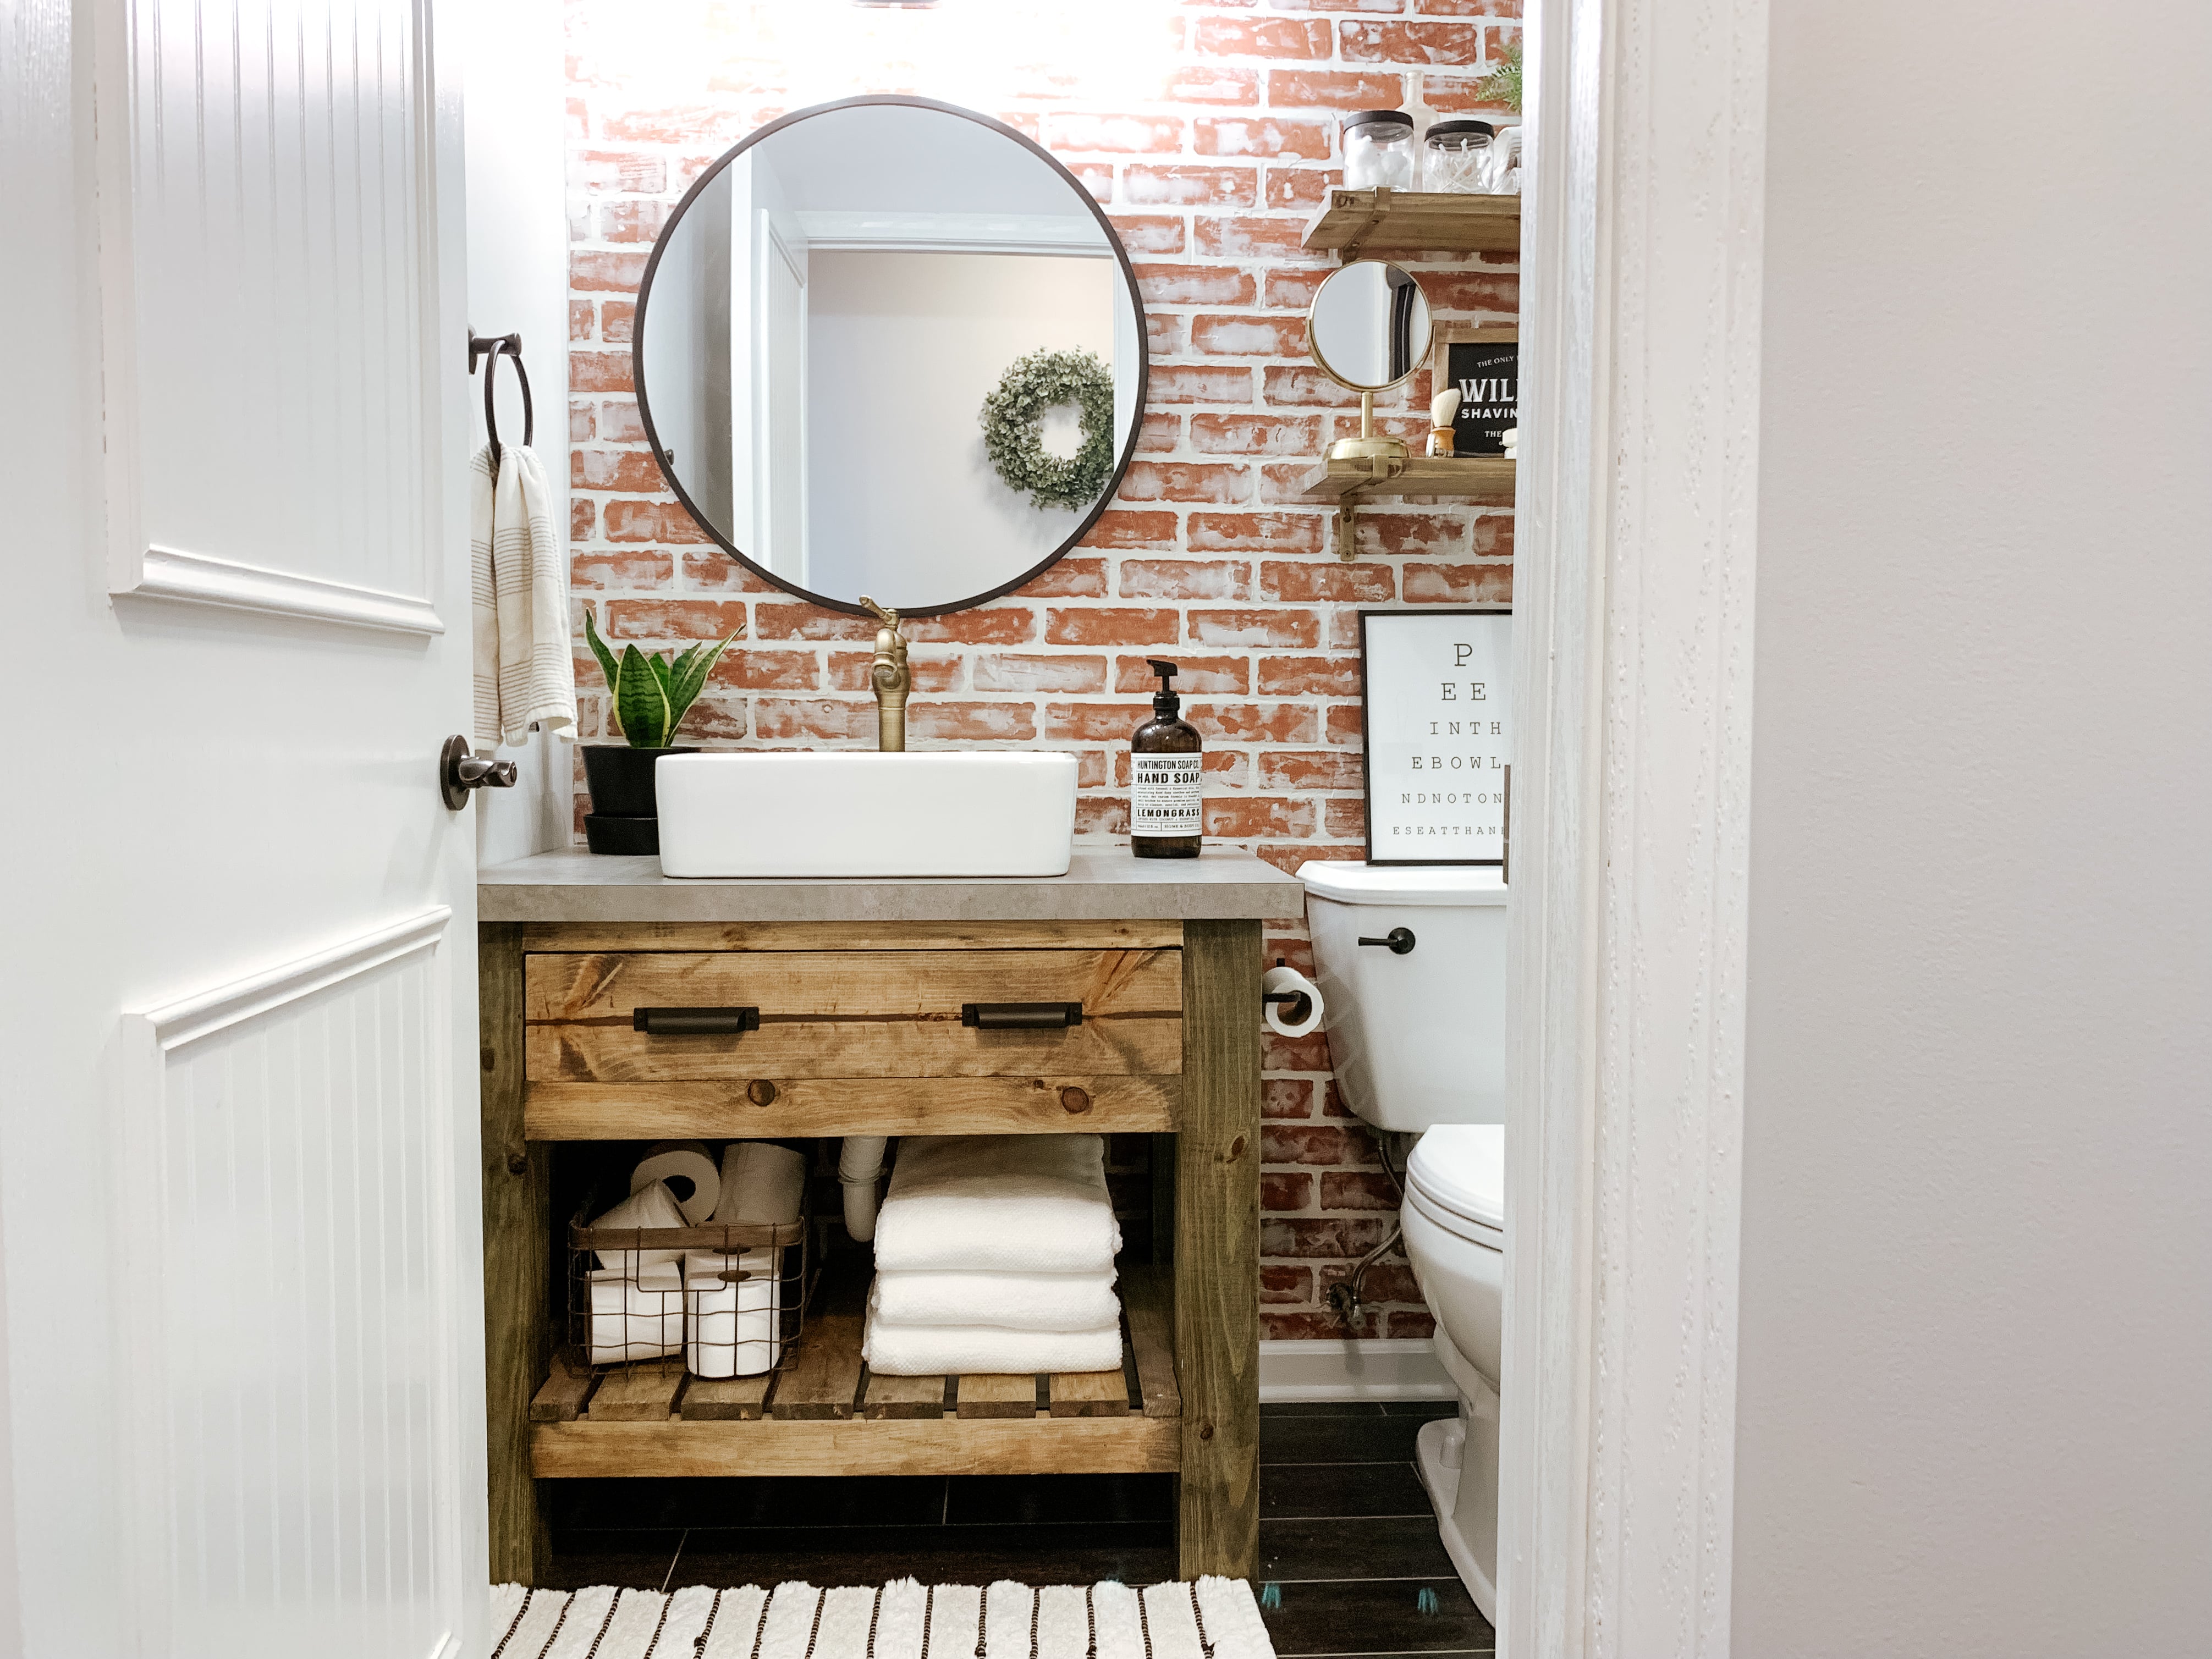 Diy Rustic Bathroom Vanity Sammy On State, Compact Bathroom Vanity Plans